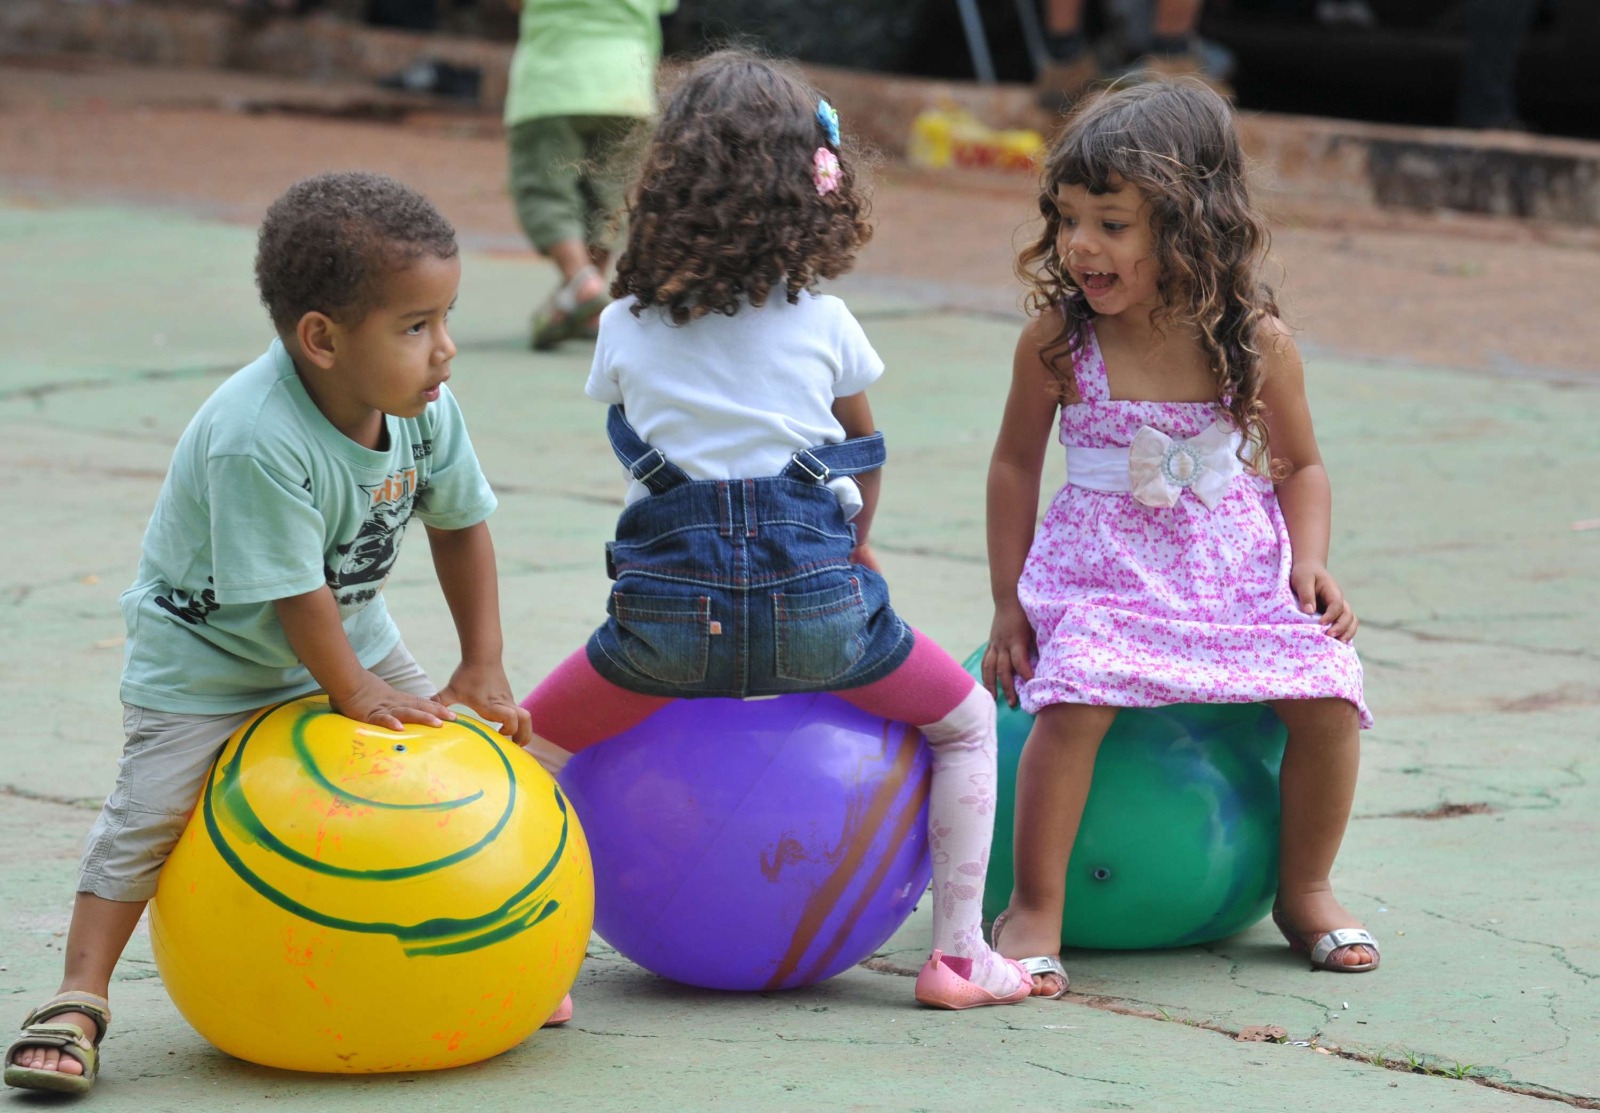 Mês das crianças: Sicoob oferece Educação Financeira para os pequenos de forma lúdica (Foto: Reprodução/ Agência Brasil)